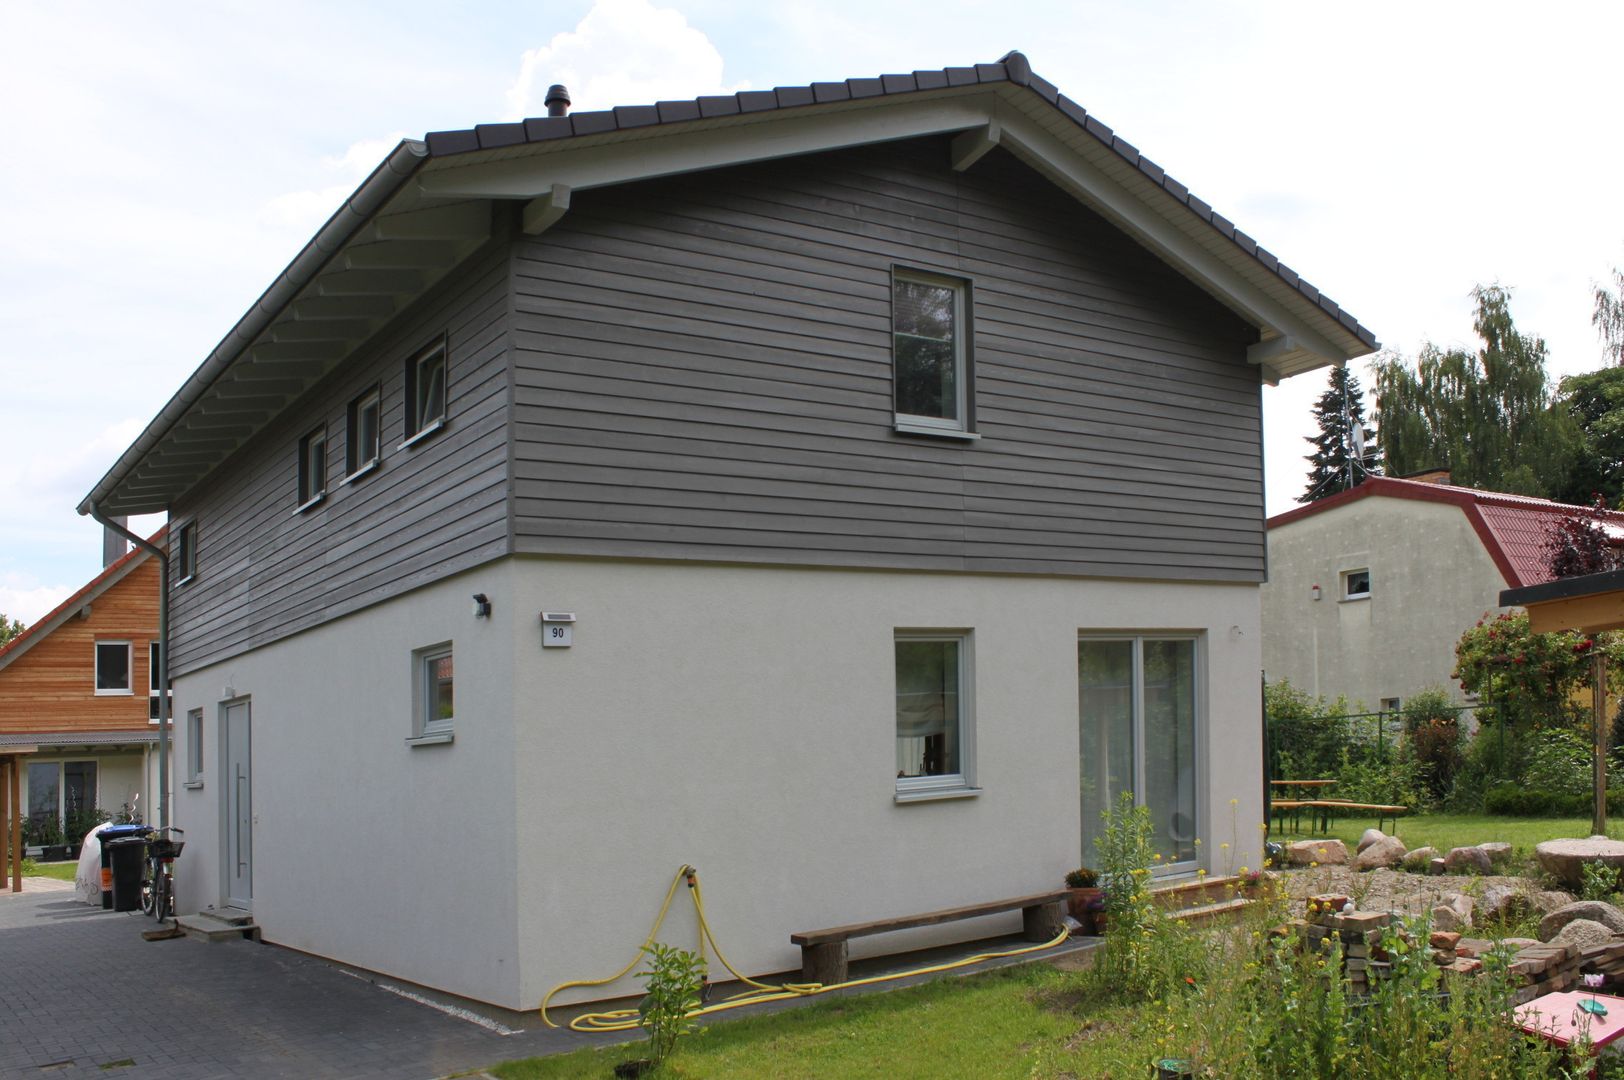 Wohngesundes Holzhaus - modern und kostengünstig, Neues Gesundes Bauen Neues Gesundes Bauen Casas modernas